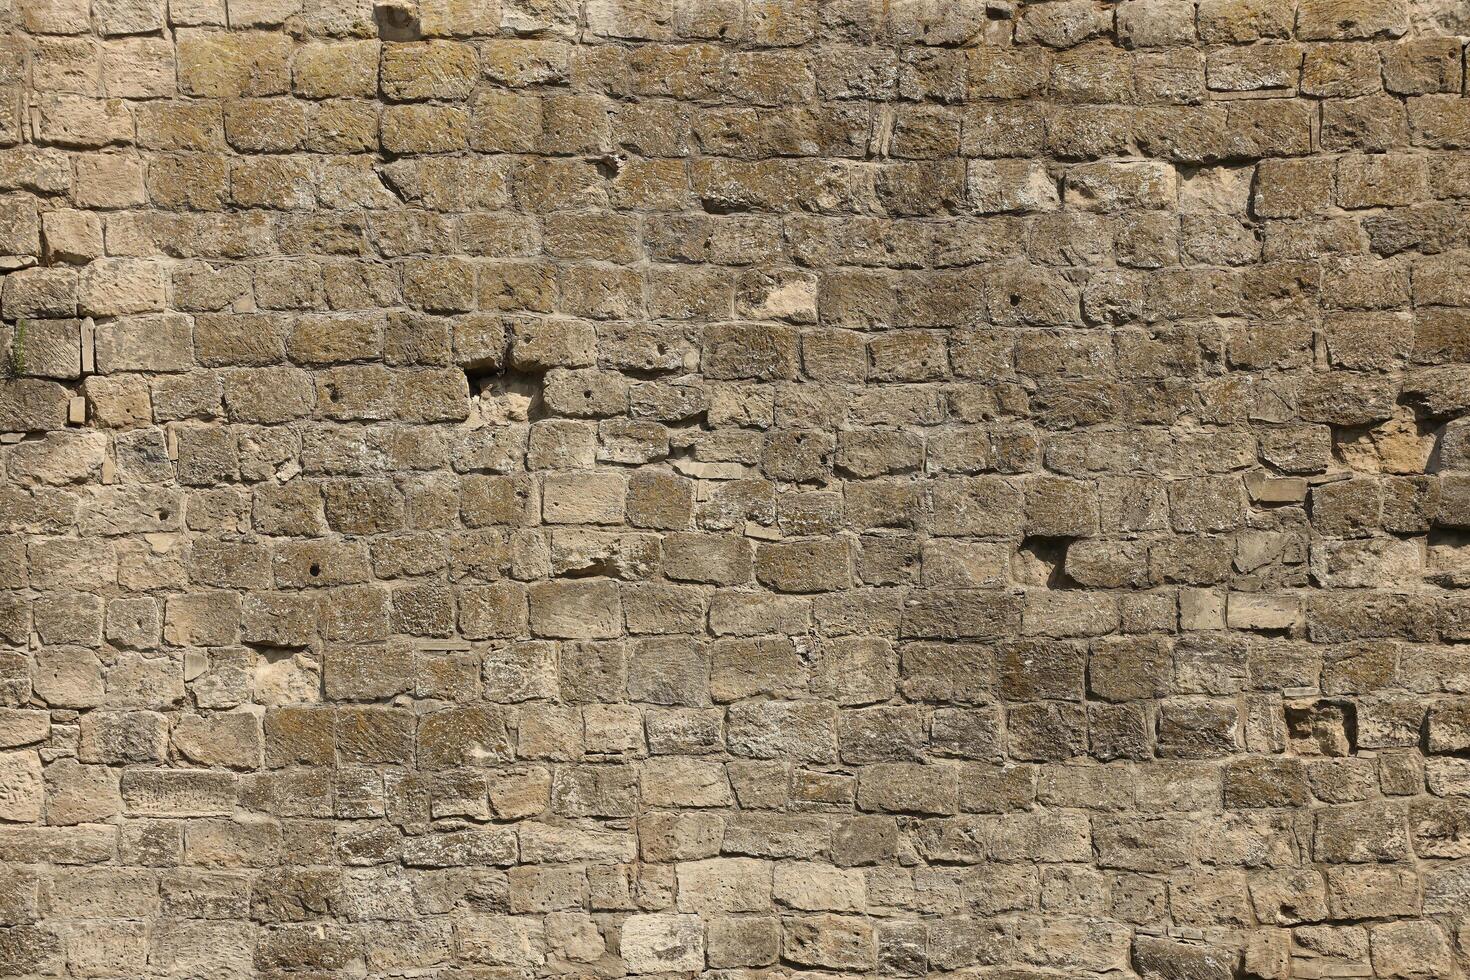 mycket gammal tegel sten vägg av slott eller fästning av 18: e århundrade. full ram vägg med föråldrad smutsig och knäckt tegelstenar foto